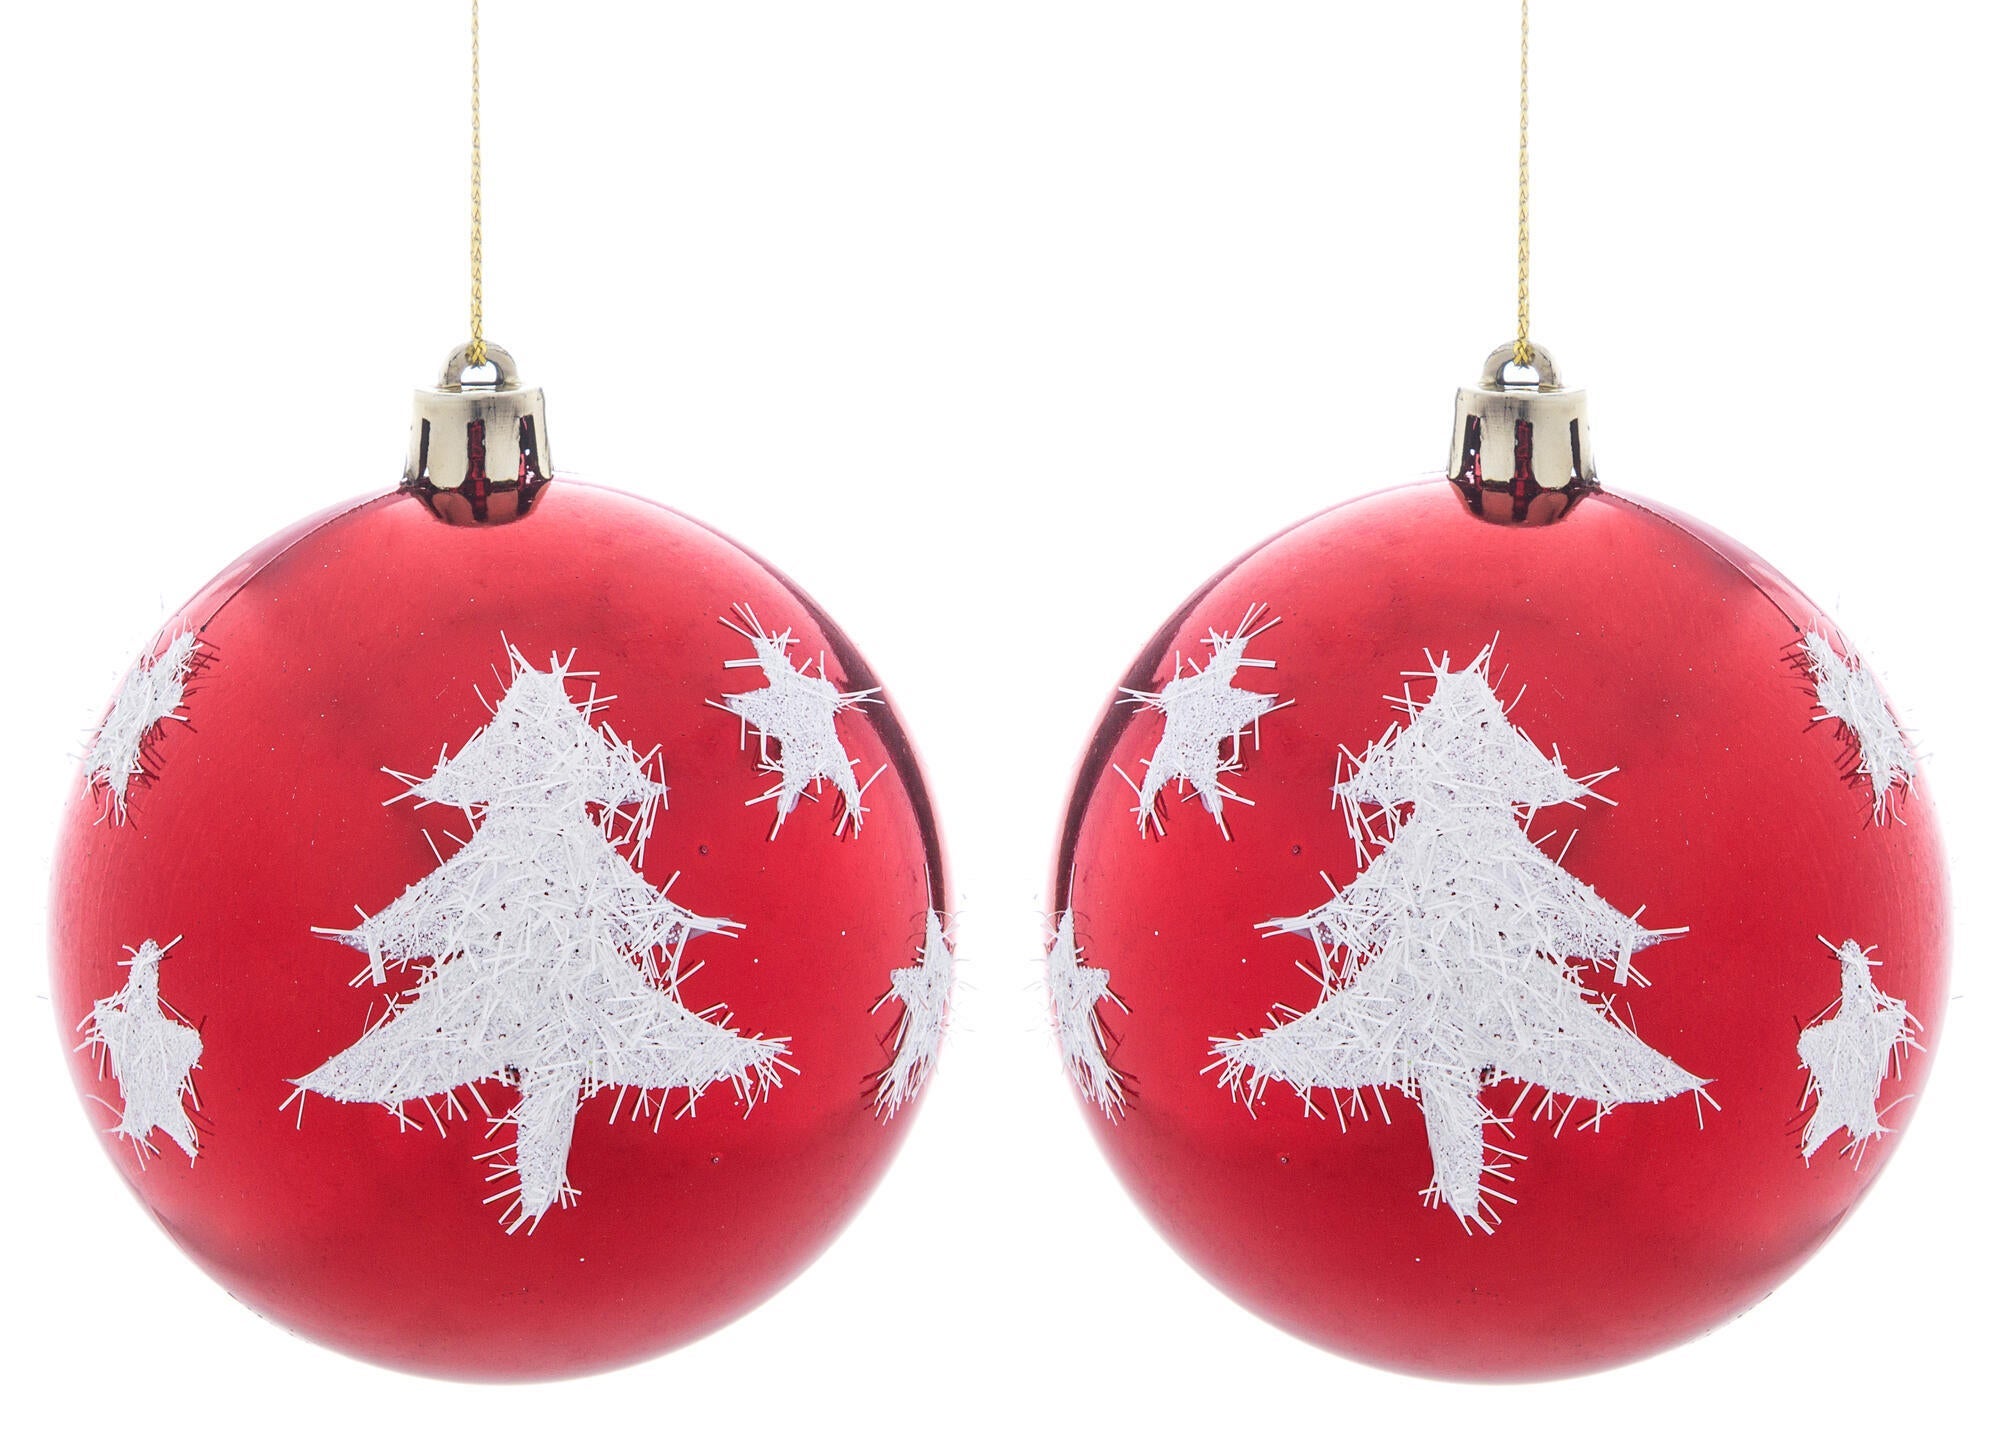 Bolas de Navidad y adornos navideños | Leroy Merlin